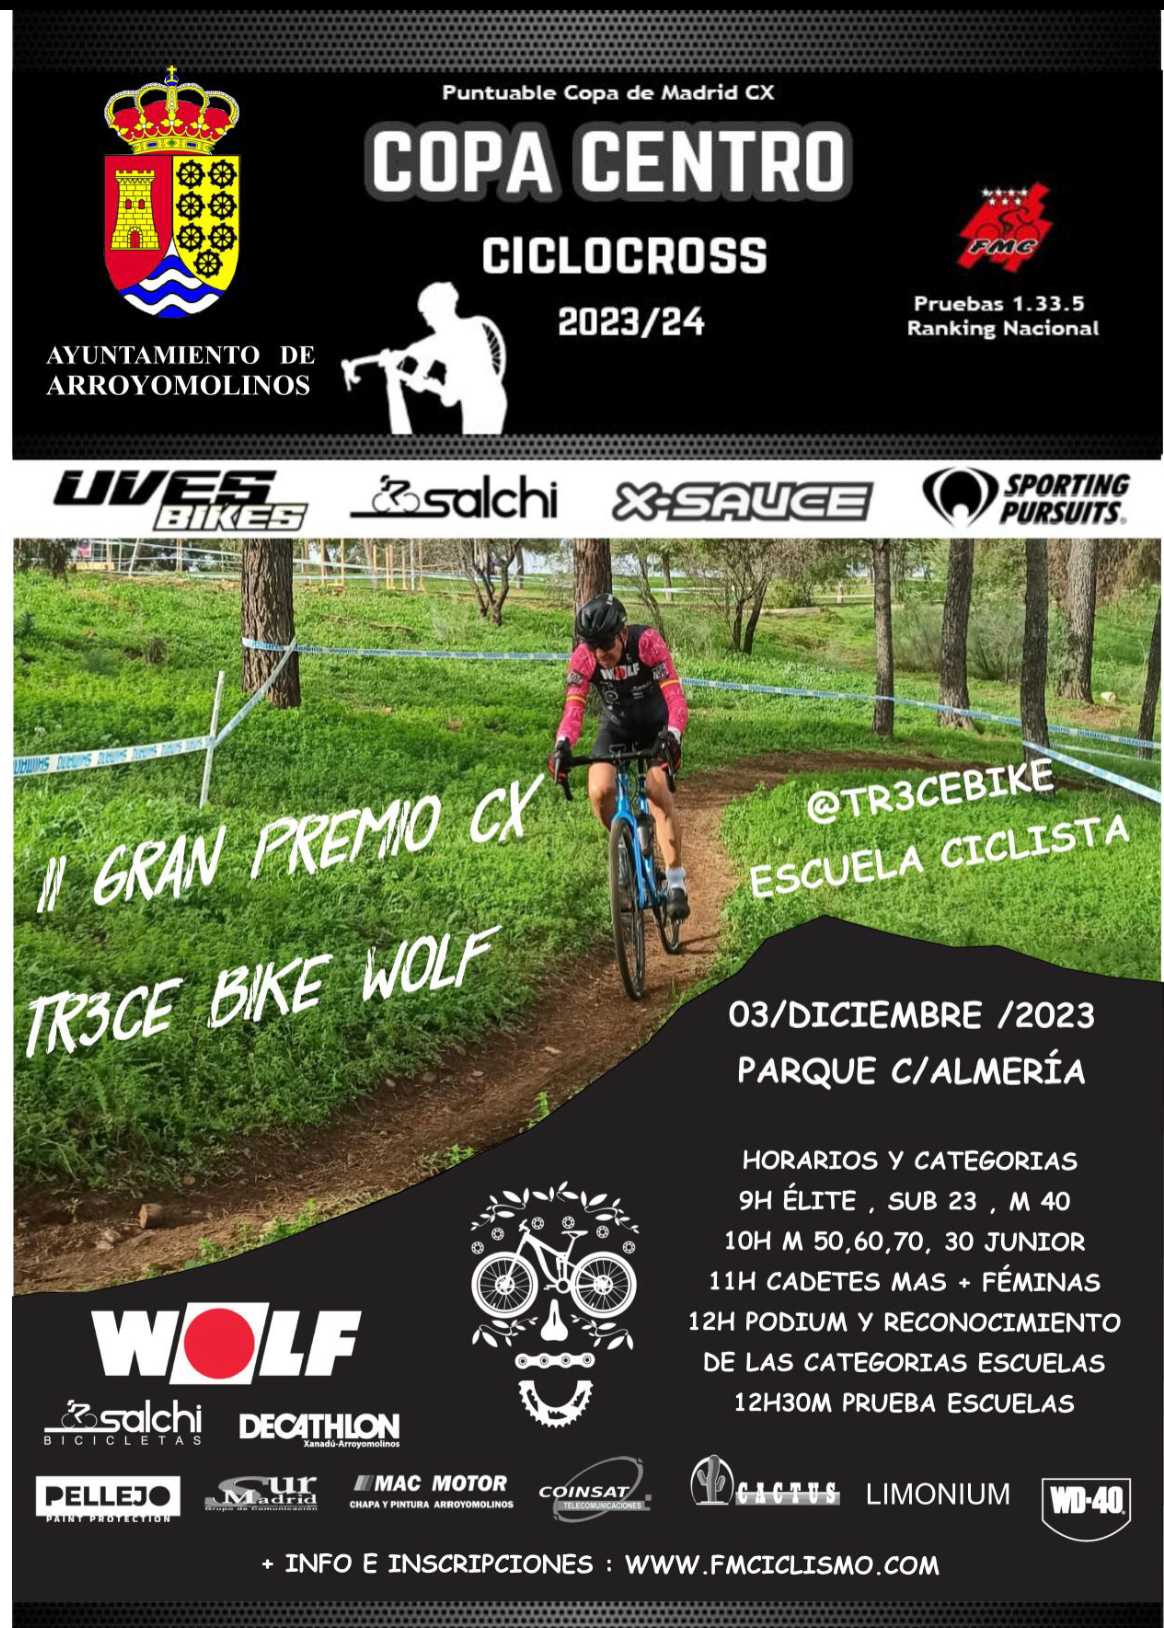 La Escuela Tr3ce Bike ultima detalles para el Gran Premio Tr3ce Bike Wolf en Arroyomolinos